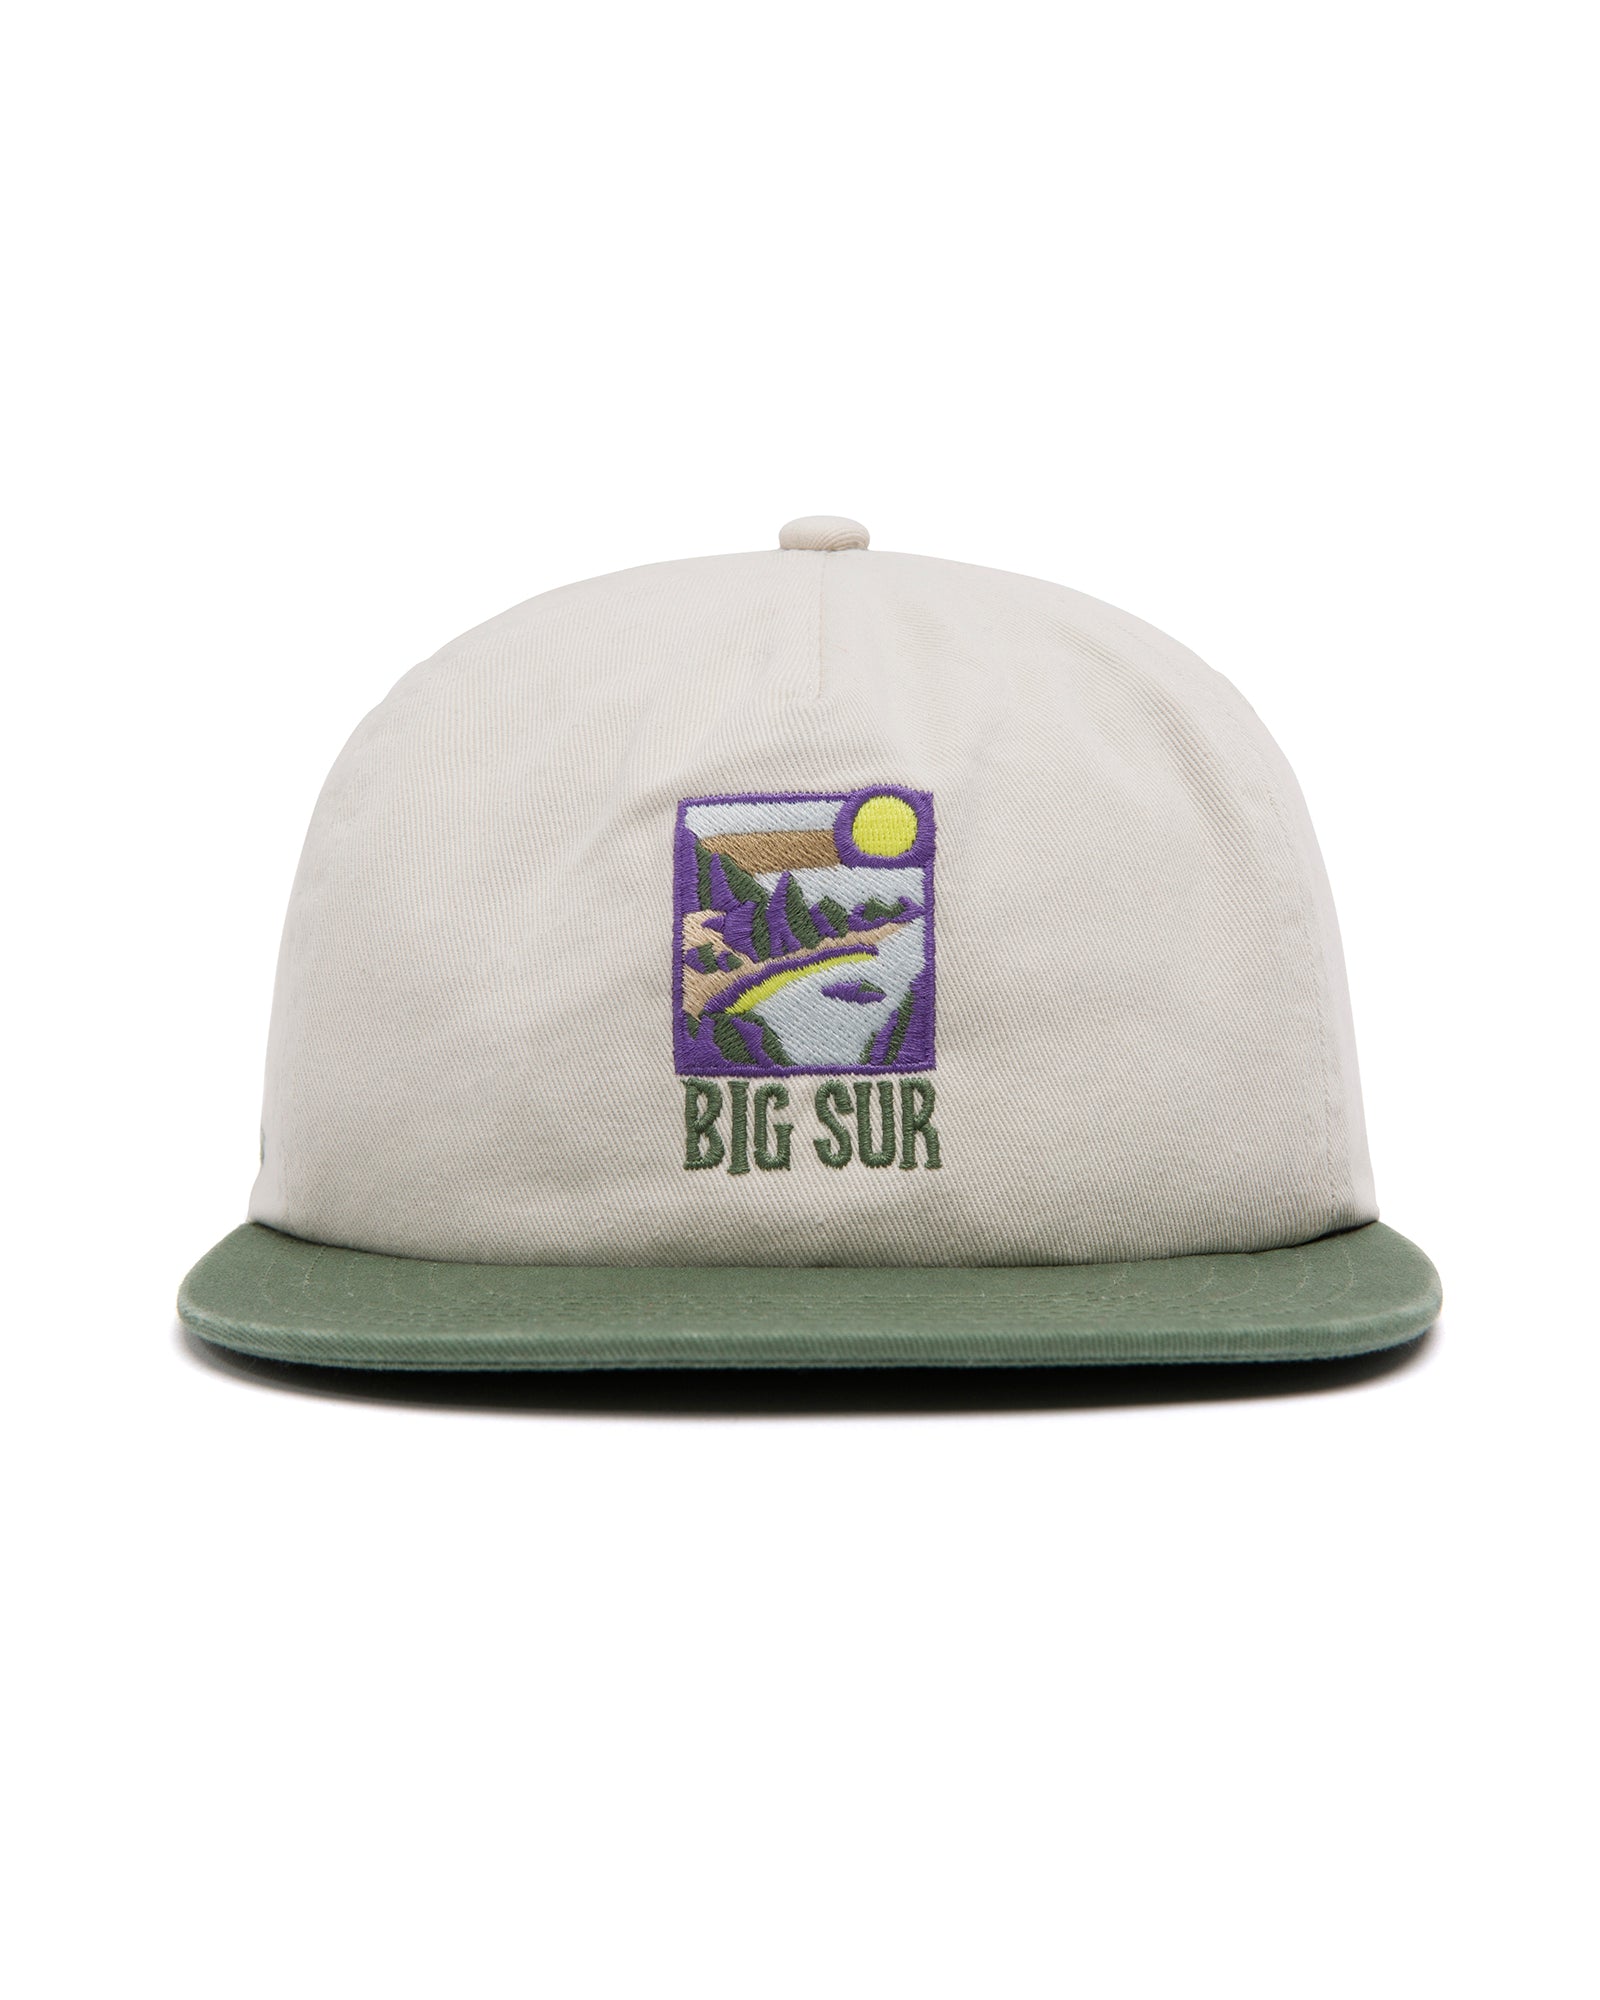 Shop Big Sur Bridges Coastal View Hat Inspired by Big Sur